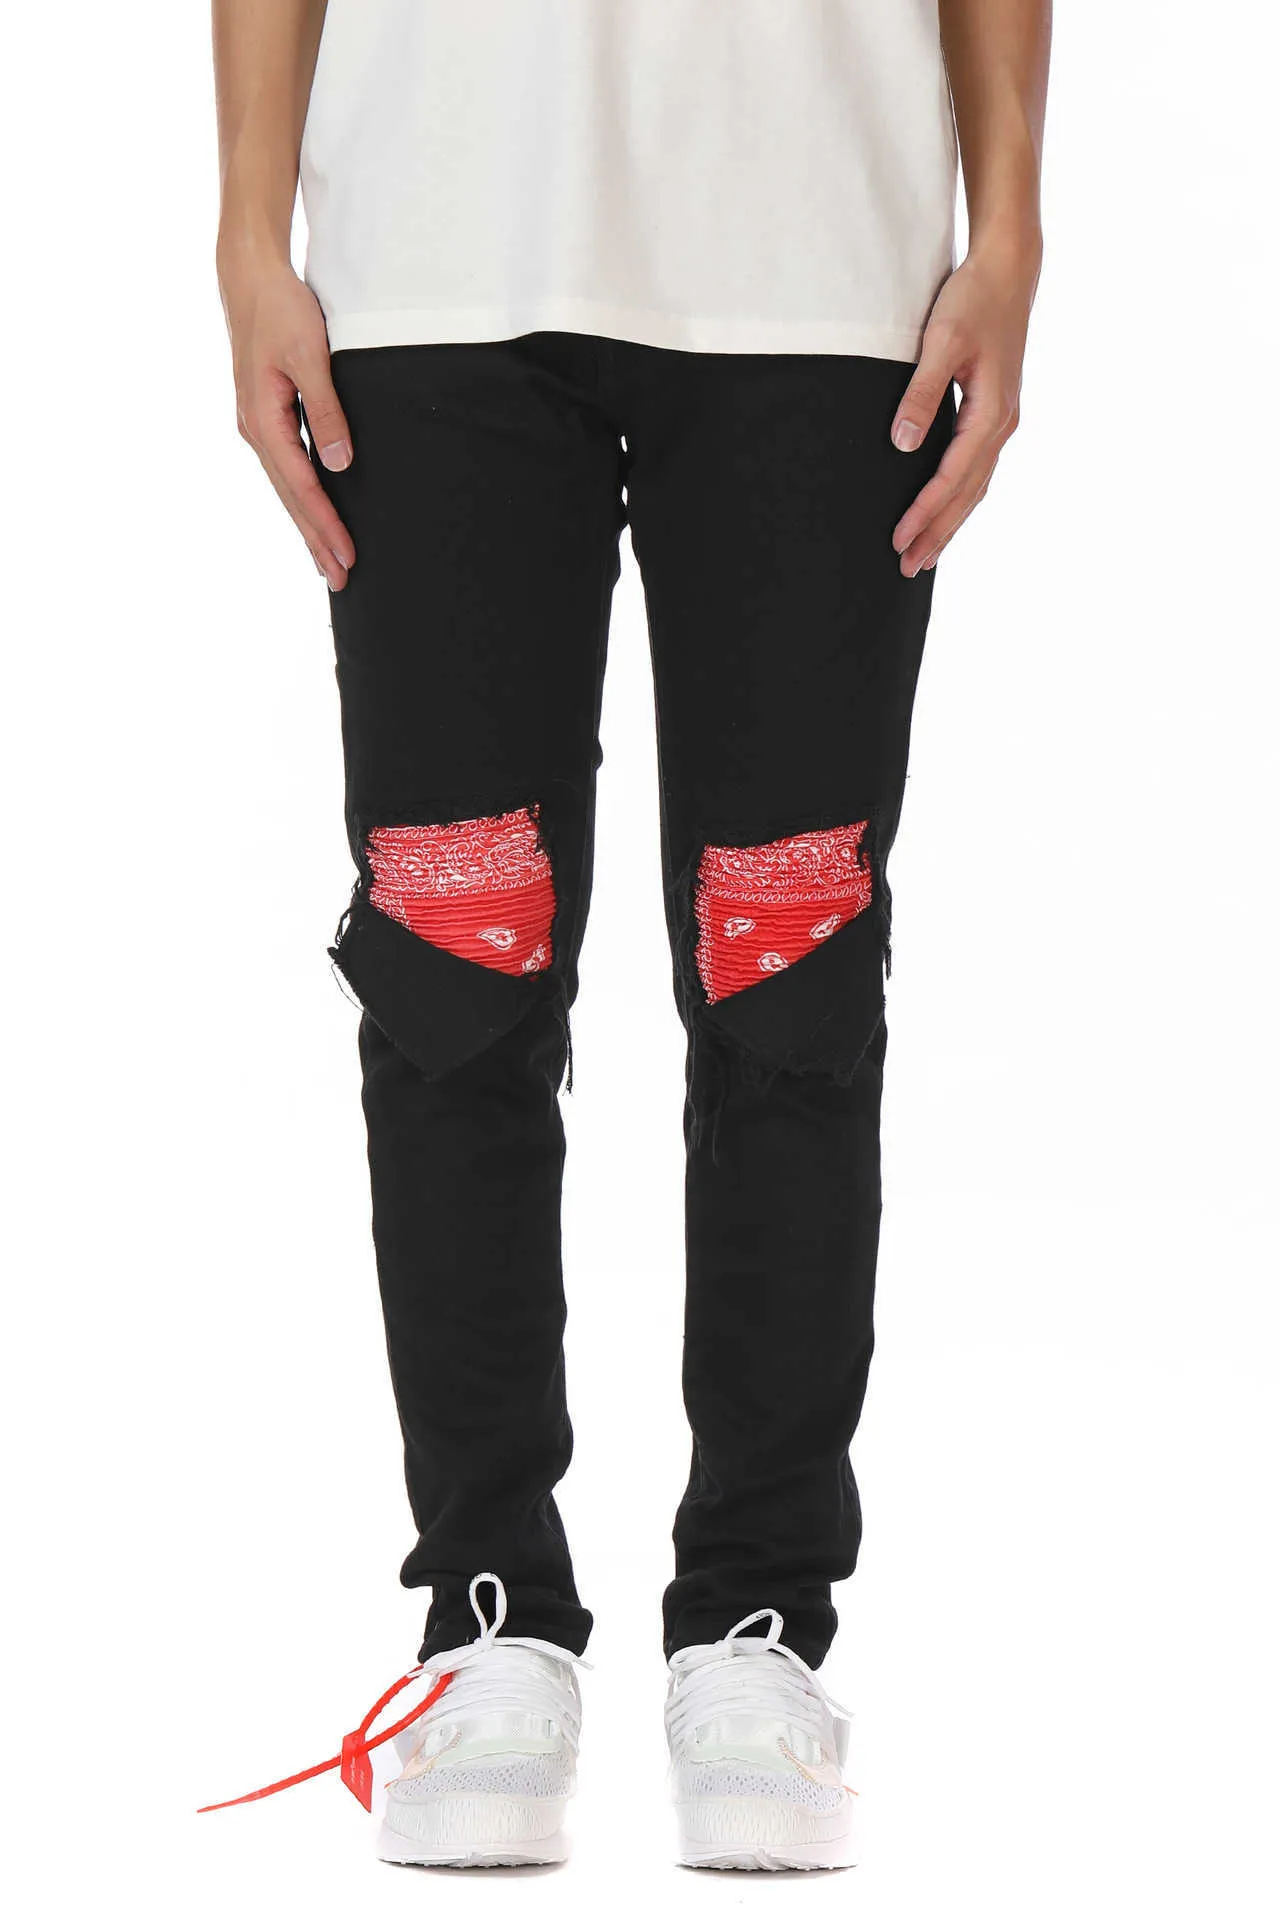 Mäns jeans tvättade hål katt skägg lapptäcke cashewnöt lila röda amoeba jeans smala fit mikro elastiska jeans258b